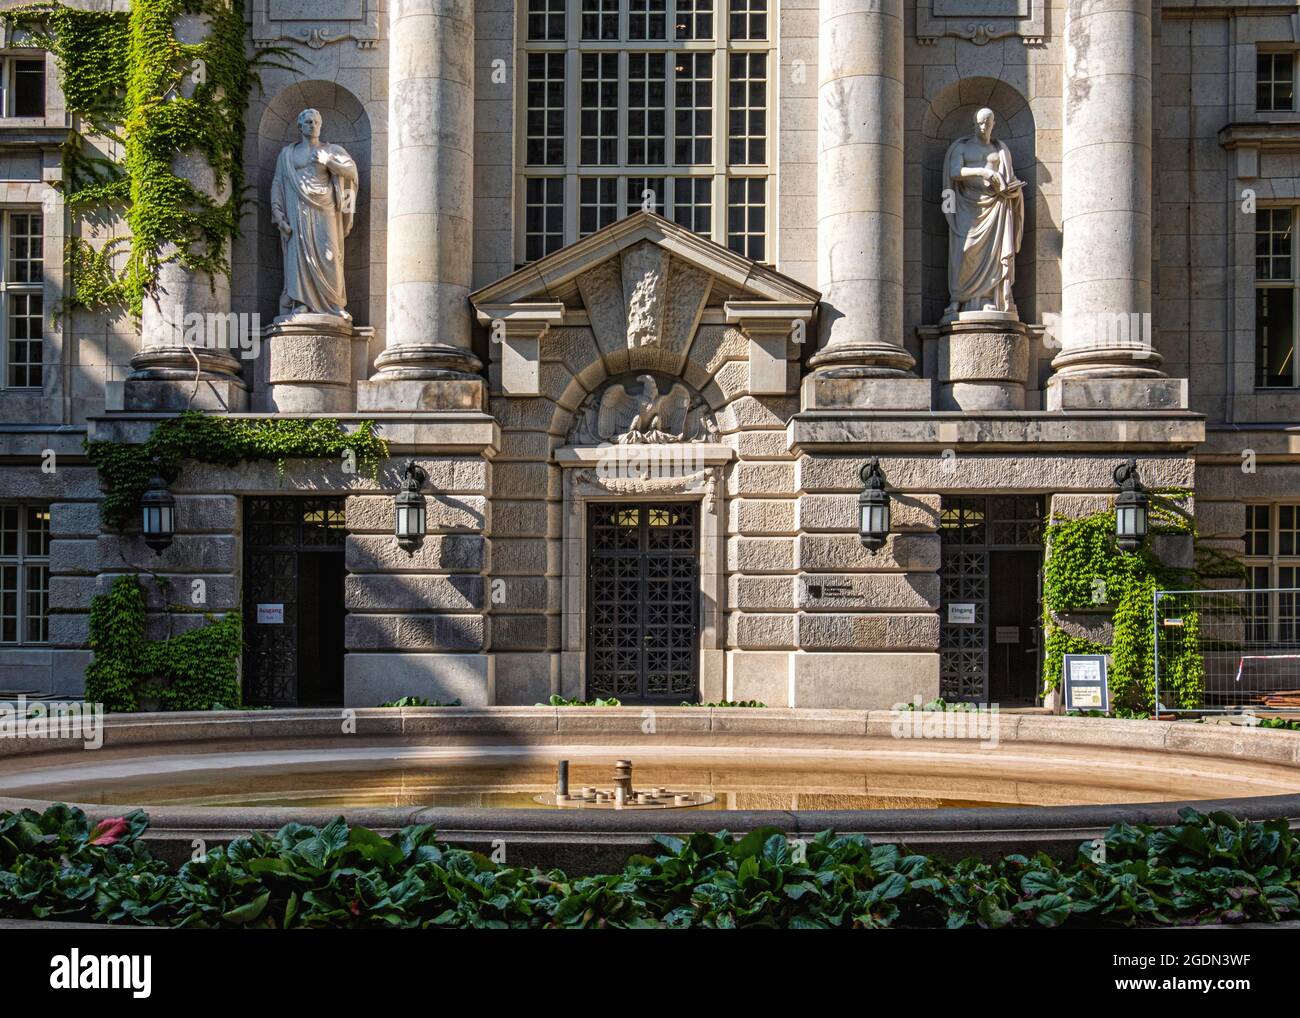 Biblioteca statale di Berlino – la più grande biblioteca di ricerca accademica in Germania. Edificio in stile neo-barocco dei primi del XX secolo, Unter den Linden 8, Mitte, Berlino Foto Stock